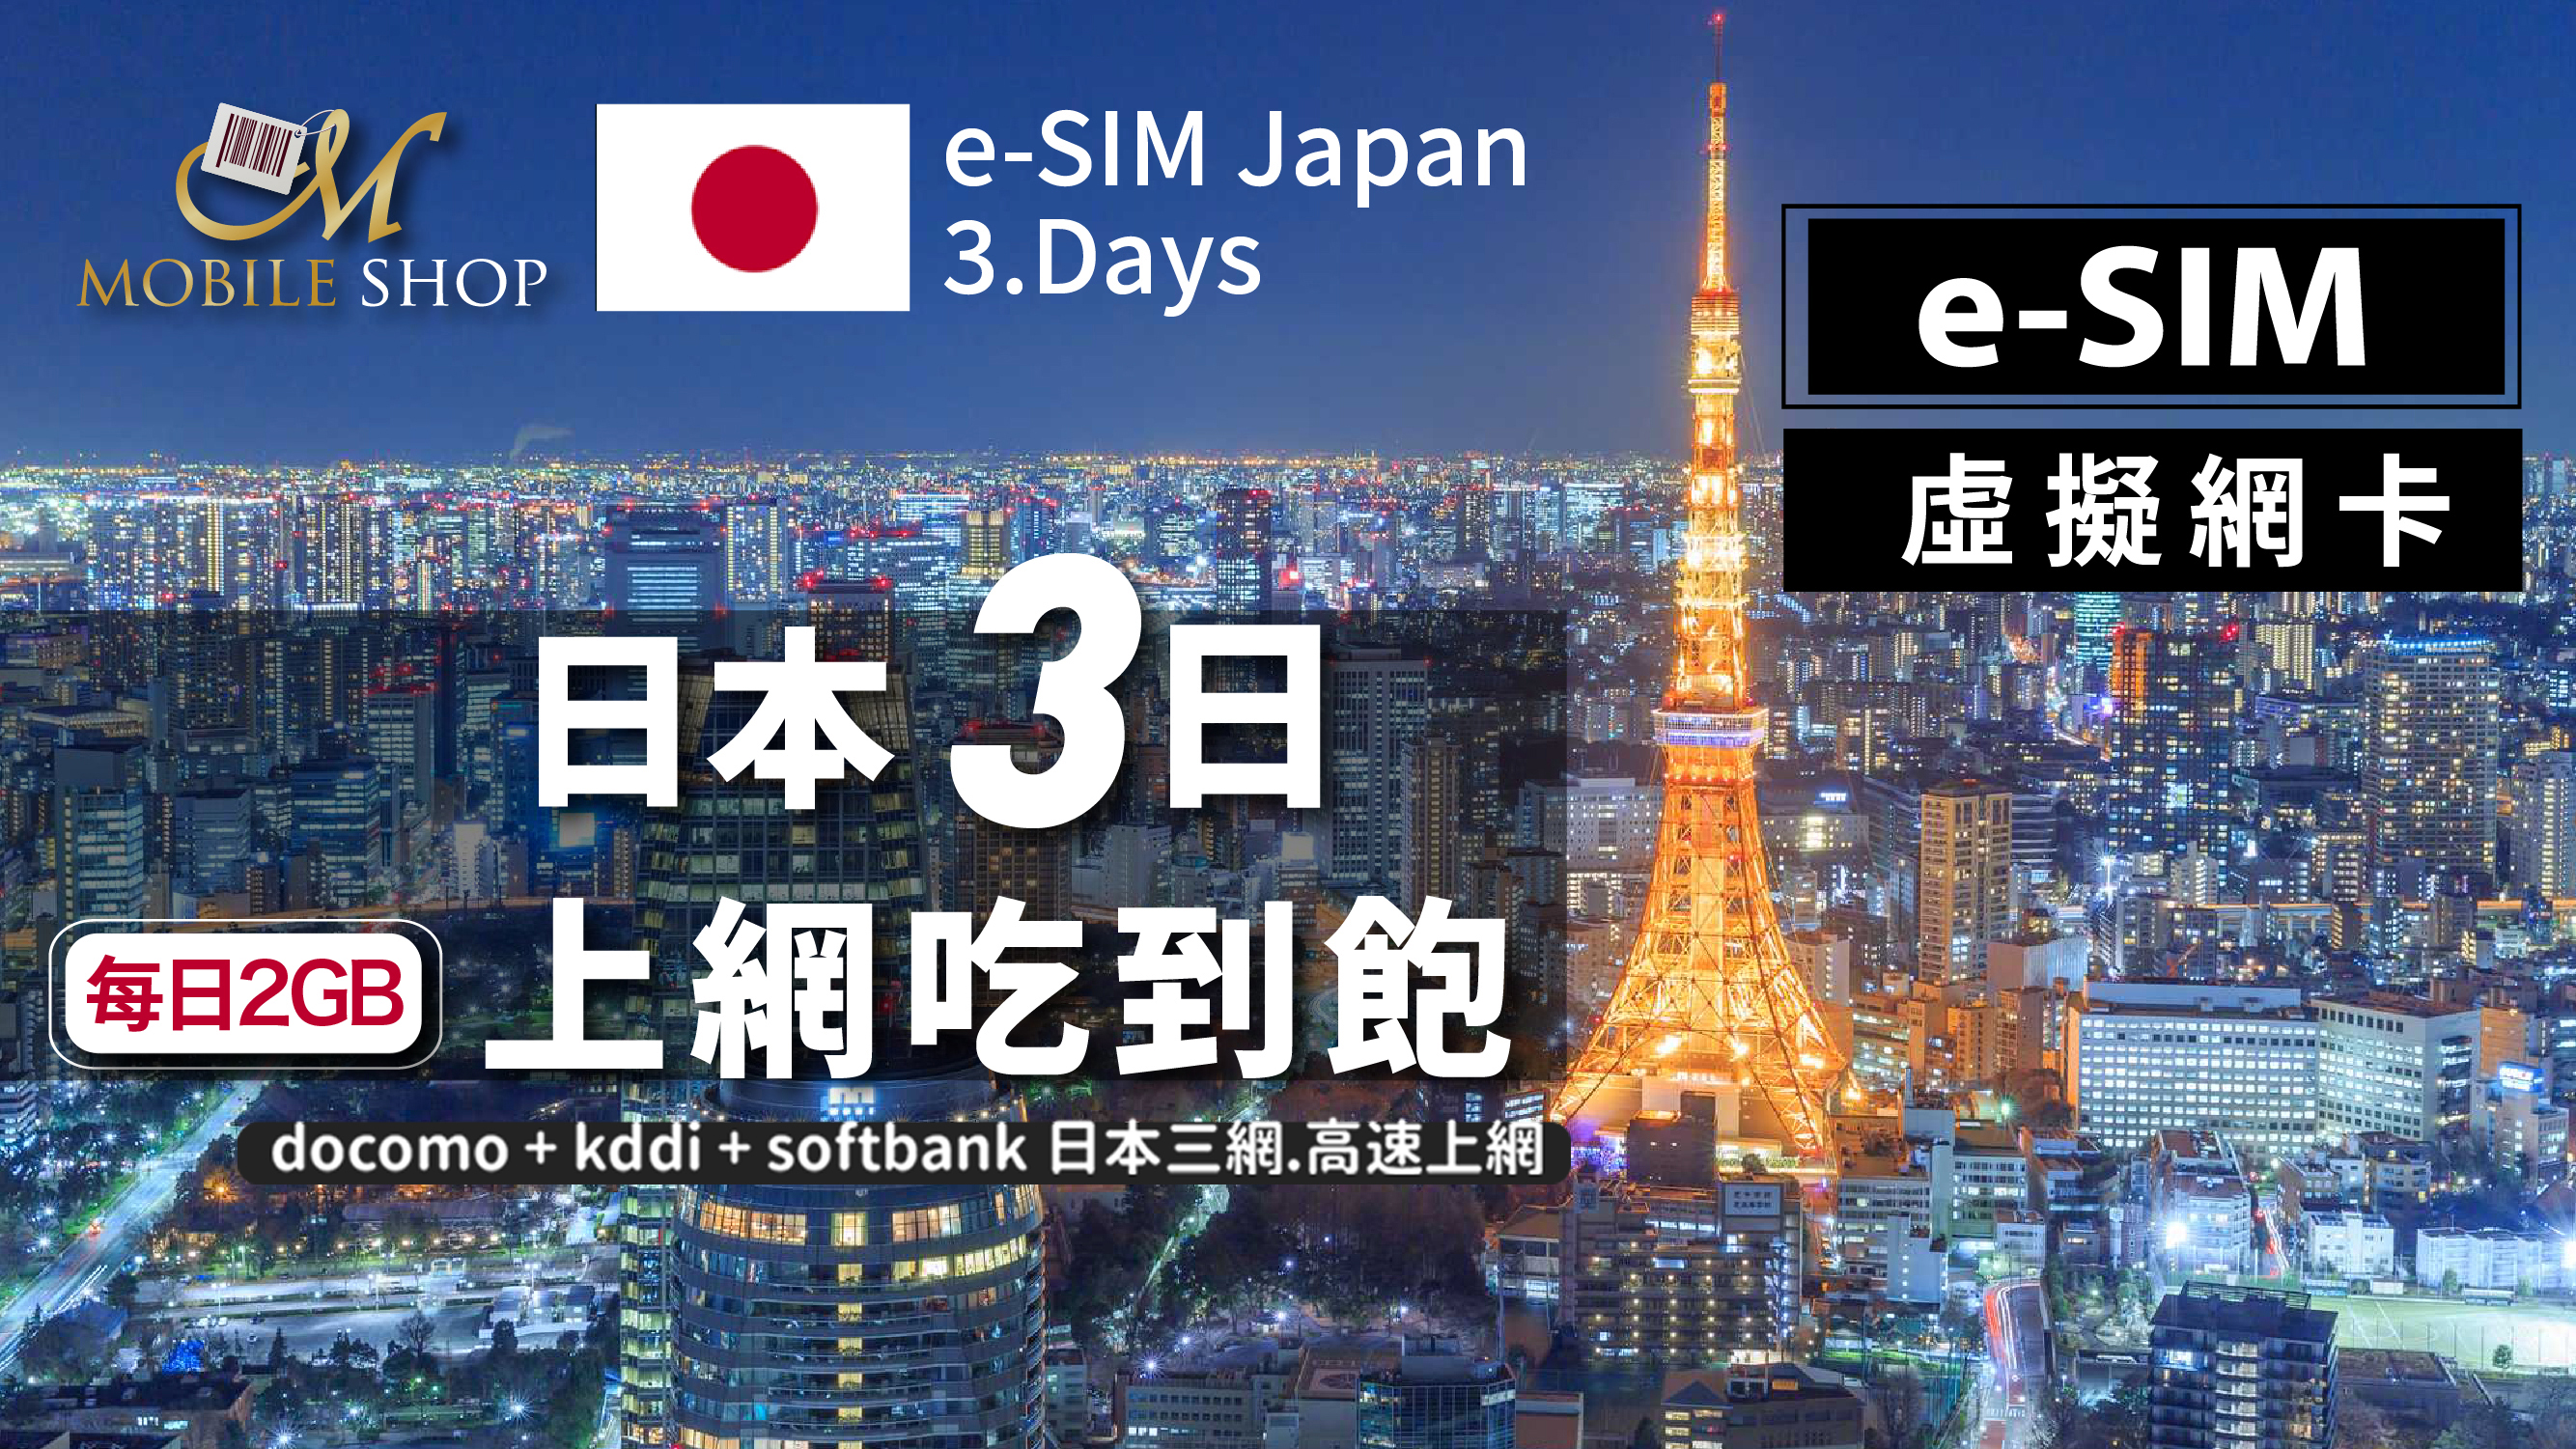 eSIM Japan 3days/2GB unlimited data